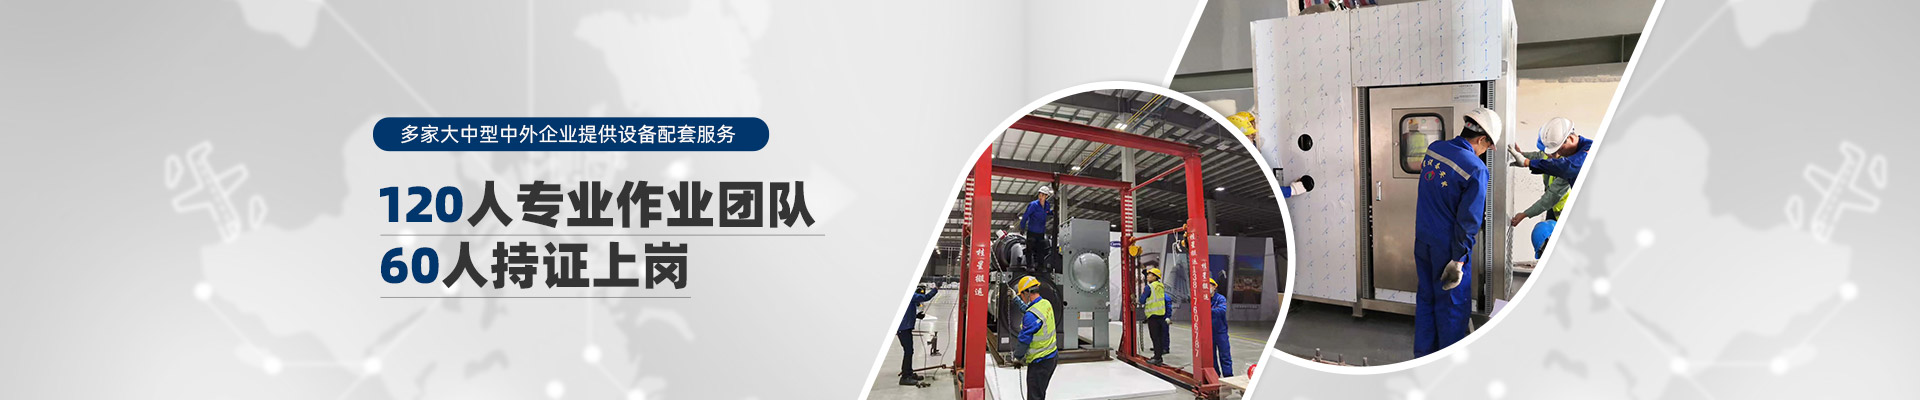 桂星搬運-規模化專業性施工企業及工業設備服務提供商